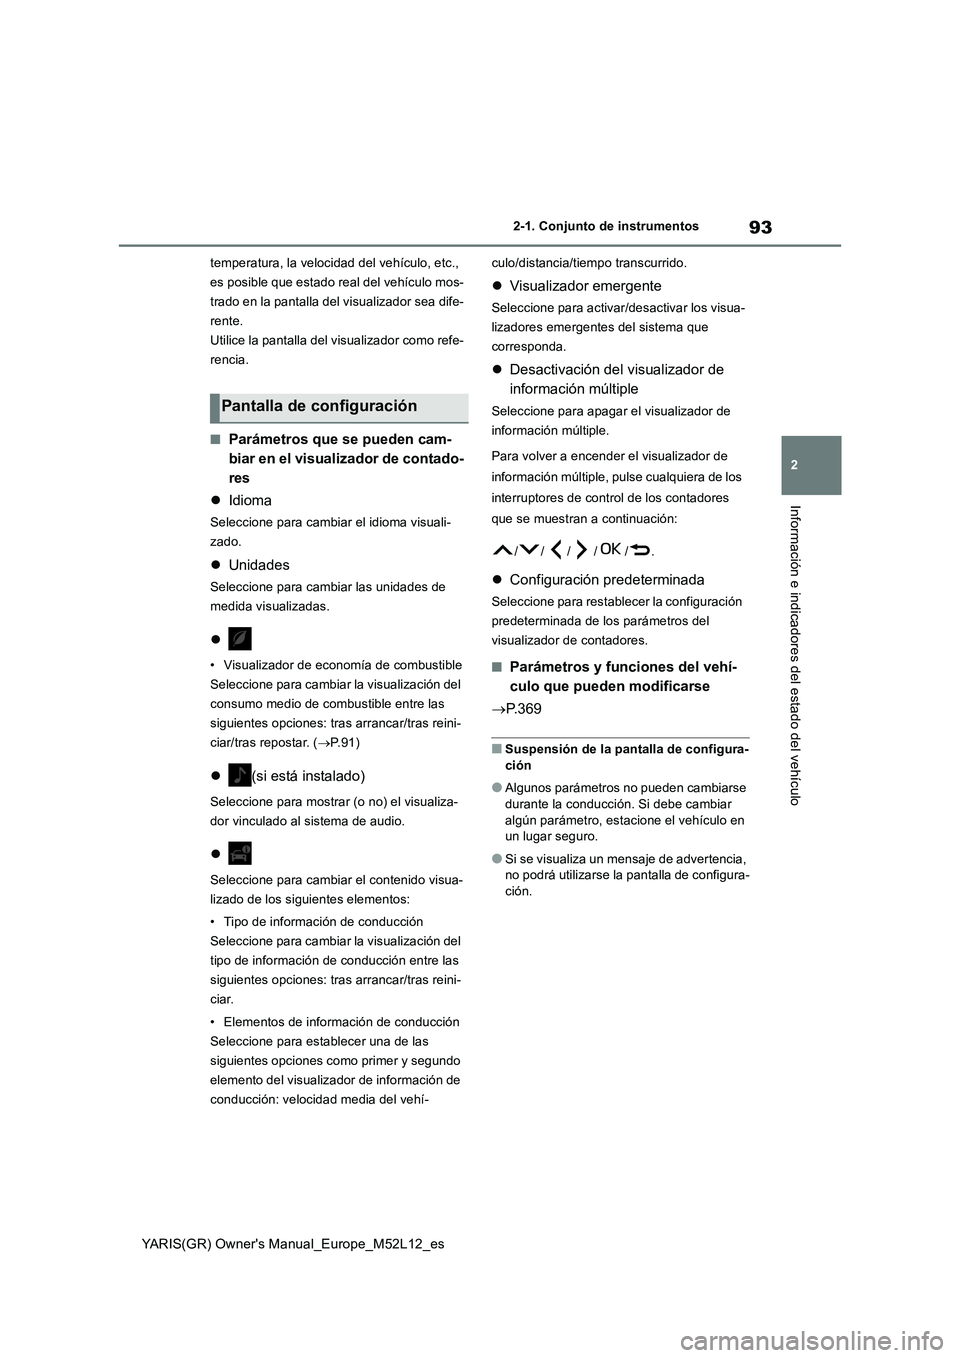 TOYOTA GR YARIS 2020  Manuale de Empleo (in Spanish) 93
2
YARIS(GR) Owners Manual_Europe_M52L12_es
2-1. Conjunto de instrumentos
Información e indicadores del estado del vehículo
temperatura, la velocidad del vehículo, etc.,  
es posible que estado 